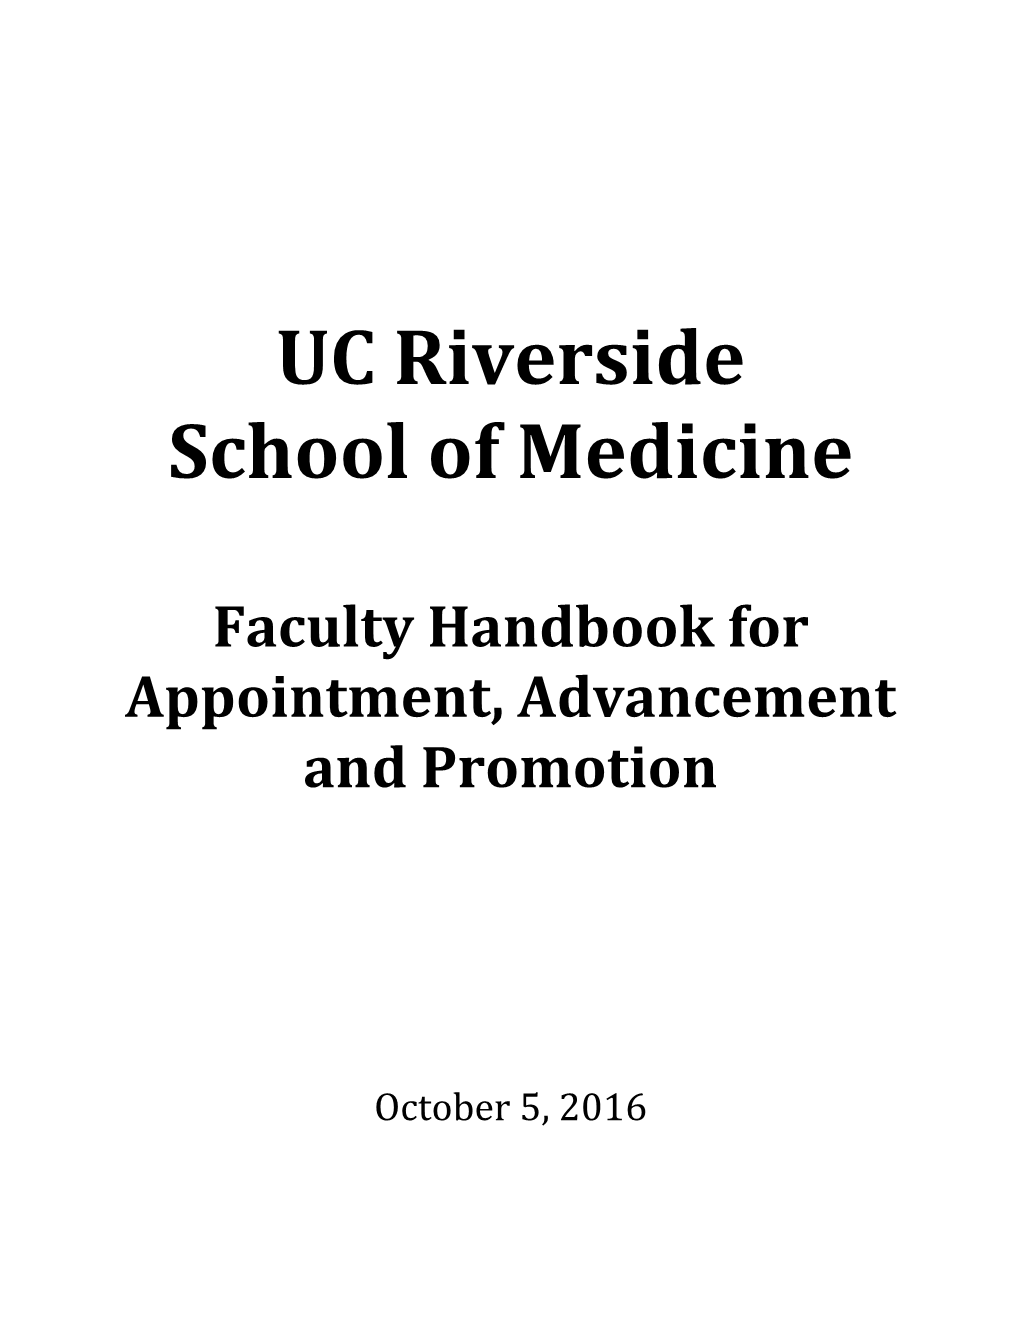 School of Medicine Faculty Handbook